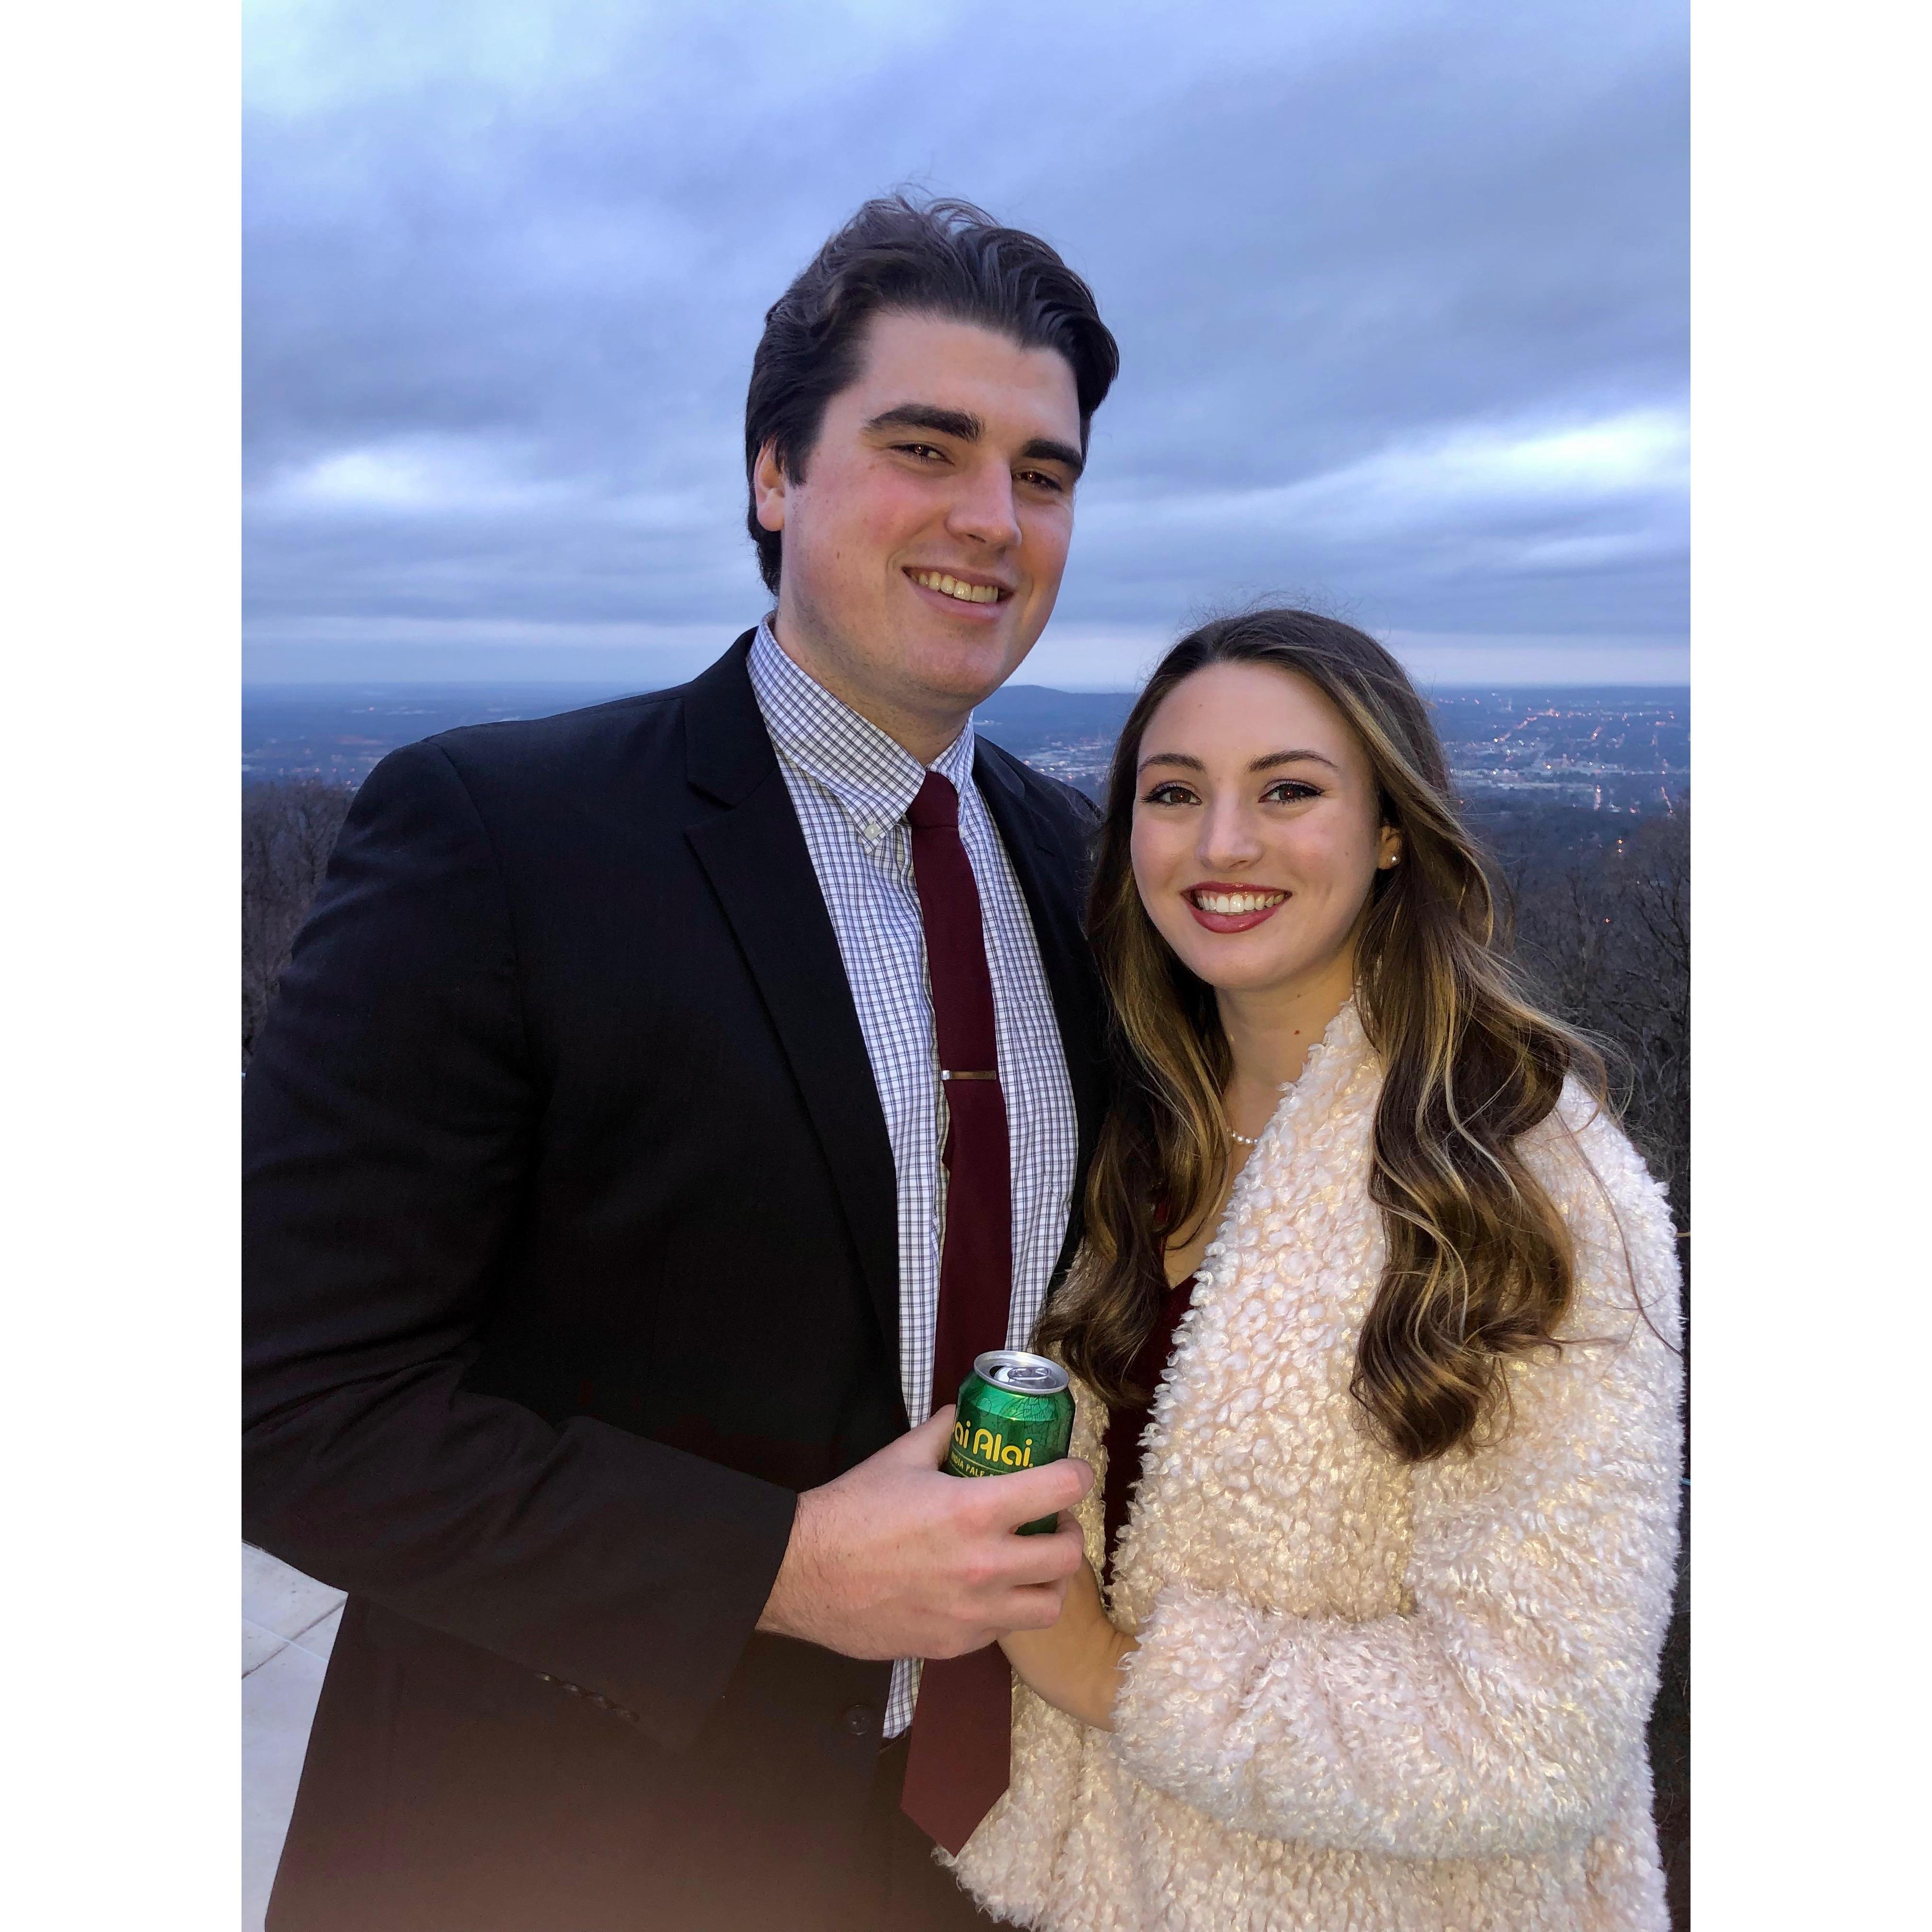 At a friend's wedding Dec. 2019